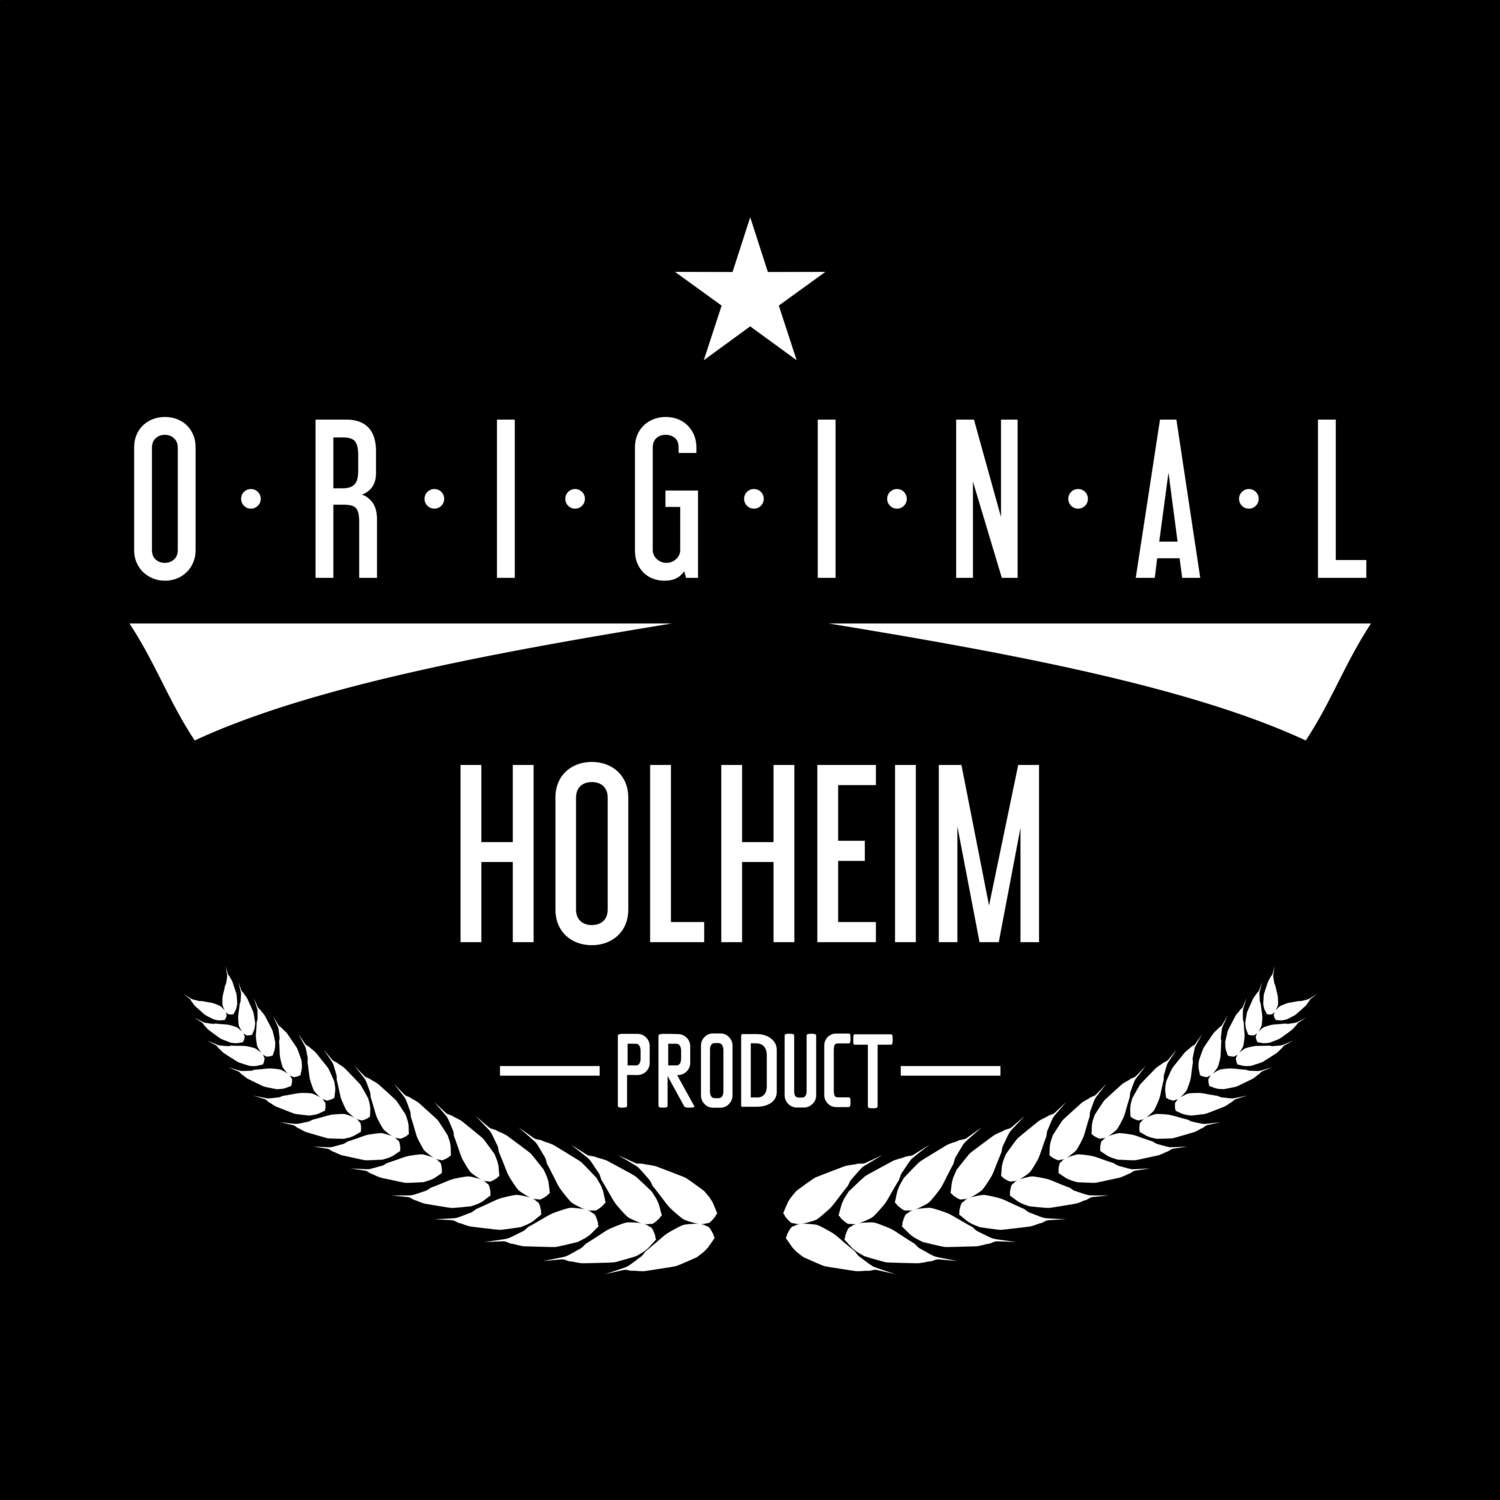 Holheim T-Shirt »Original Product«